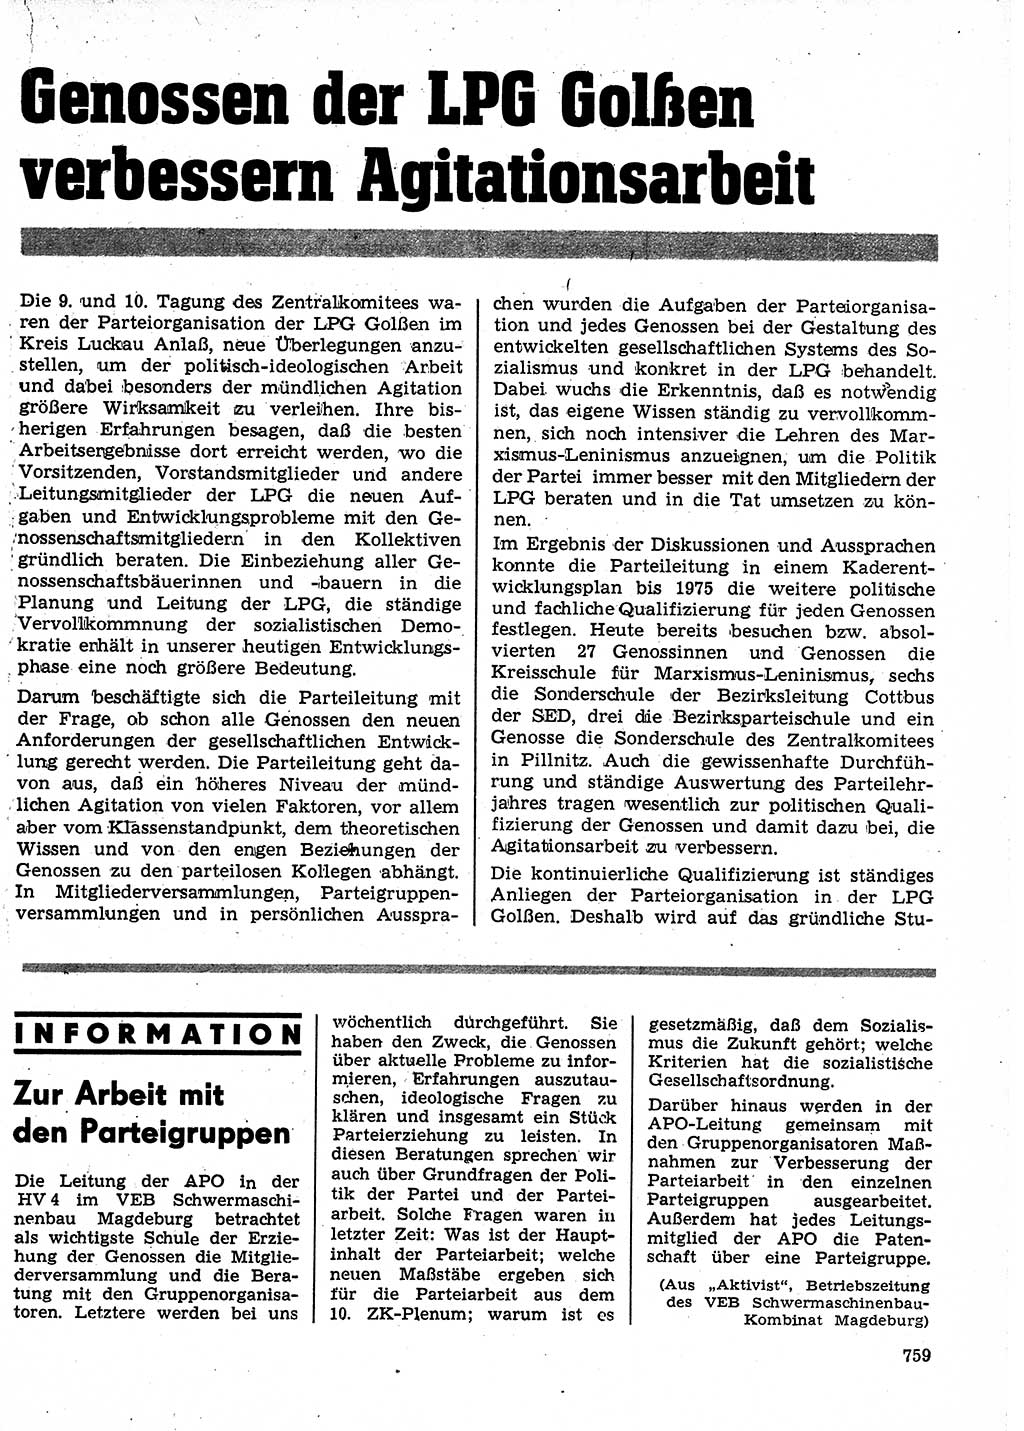 Neuer Weg (NW), Organ des Zentralkomitees (ZK) der SED (Sozialistische Einheitspartei Deutschlands) für Fragen des Parteilebens, 24. Jahrgang [Deutsche Demokratische Republik (DDR)] 1969, Seite 759 (NW ZK SED DDR 1969, S. 759)